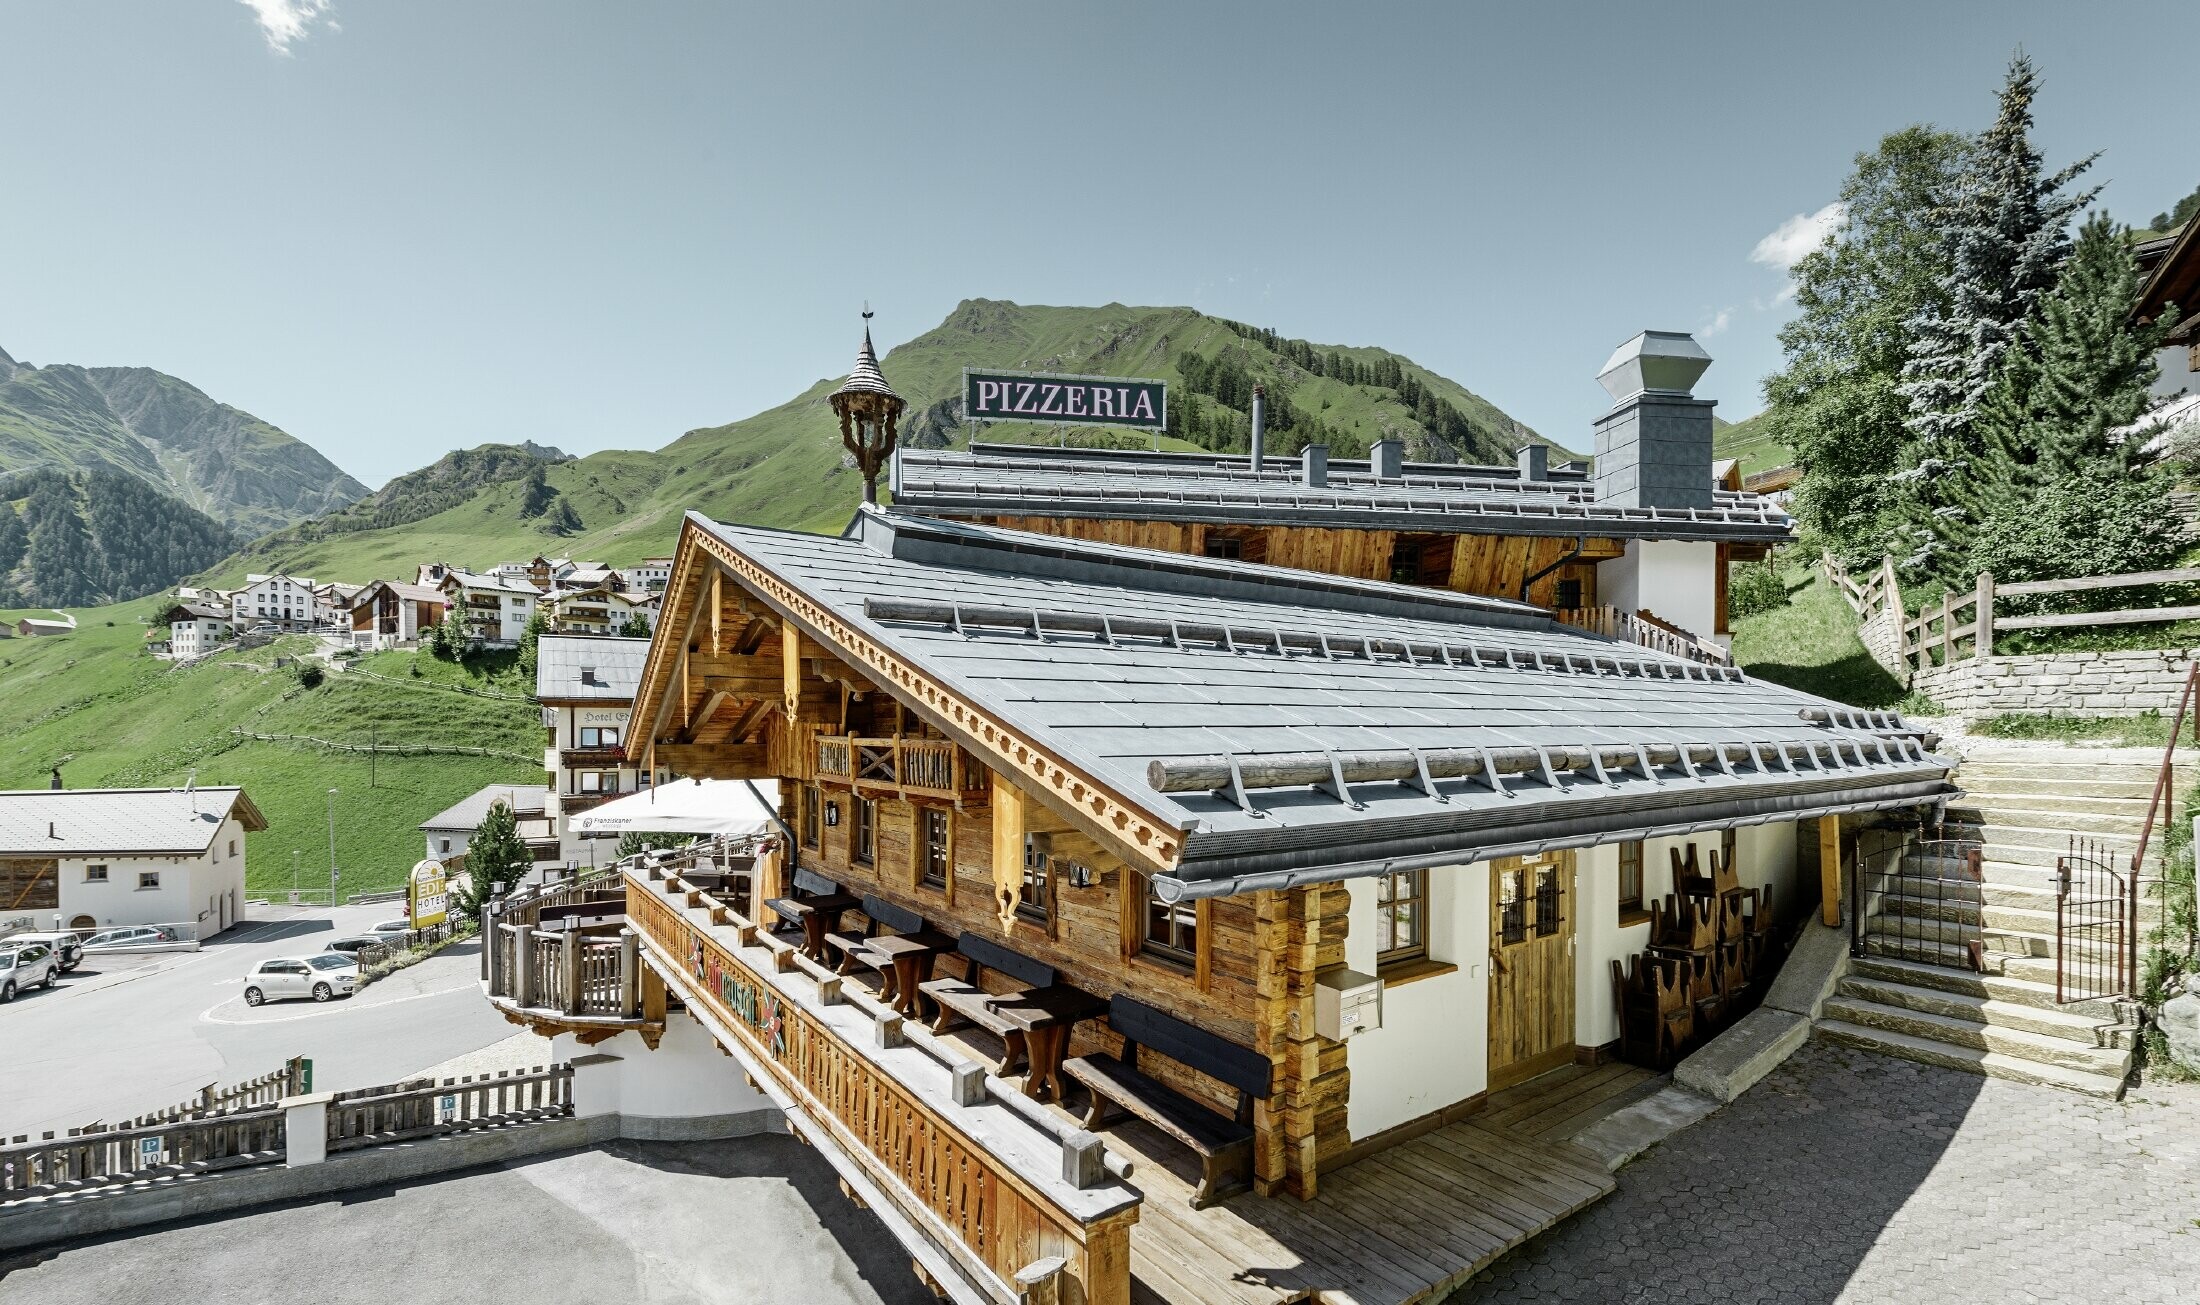 Restaurant Almrausch in bergdecor met FX.12 dakpanelen in steengrijs en sneeuwvangers op het dak